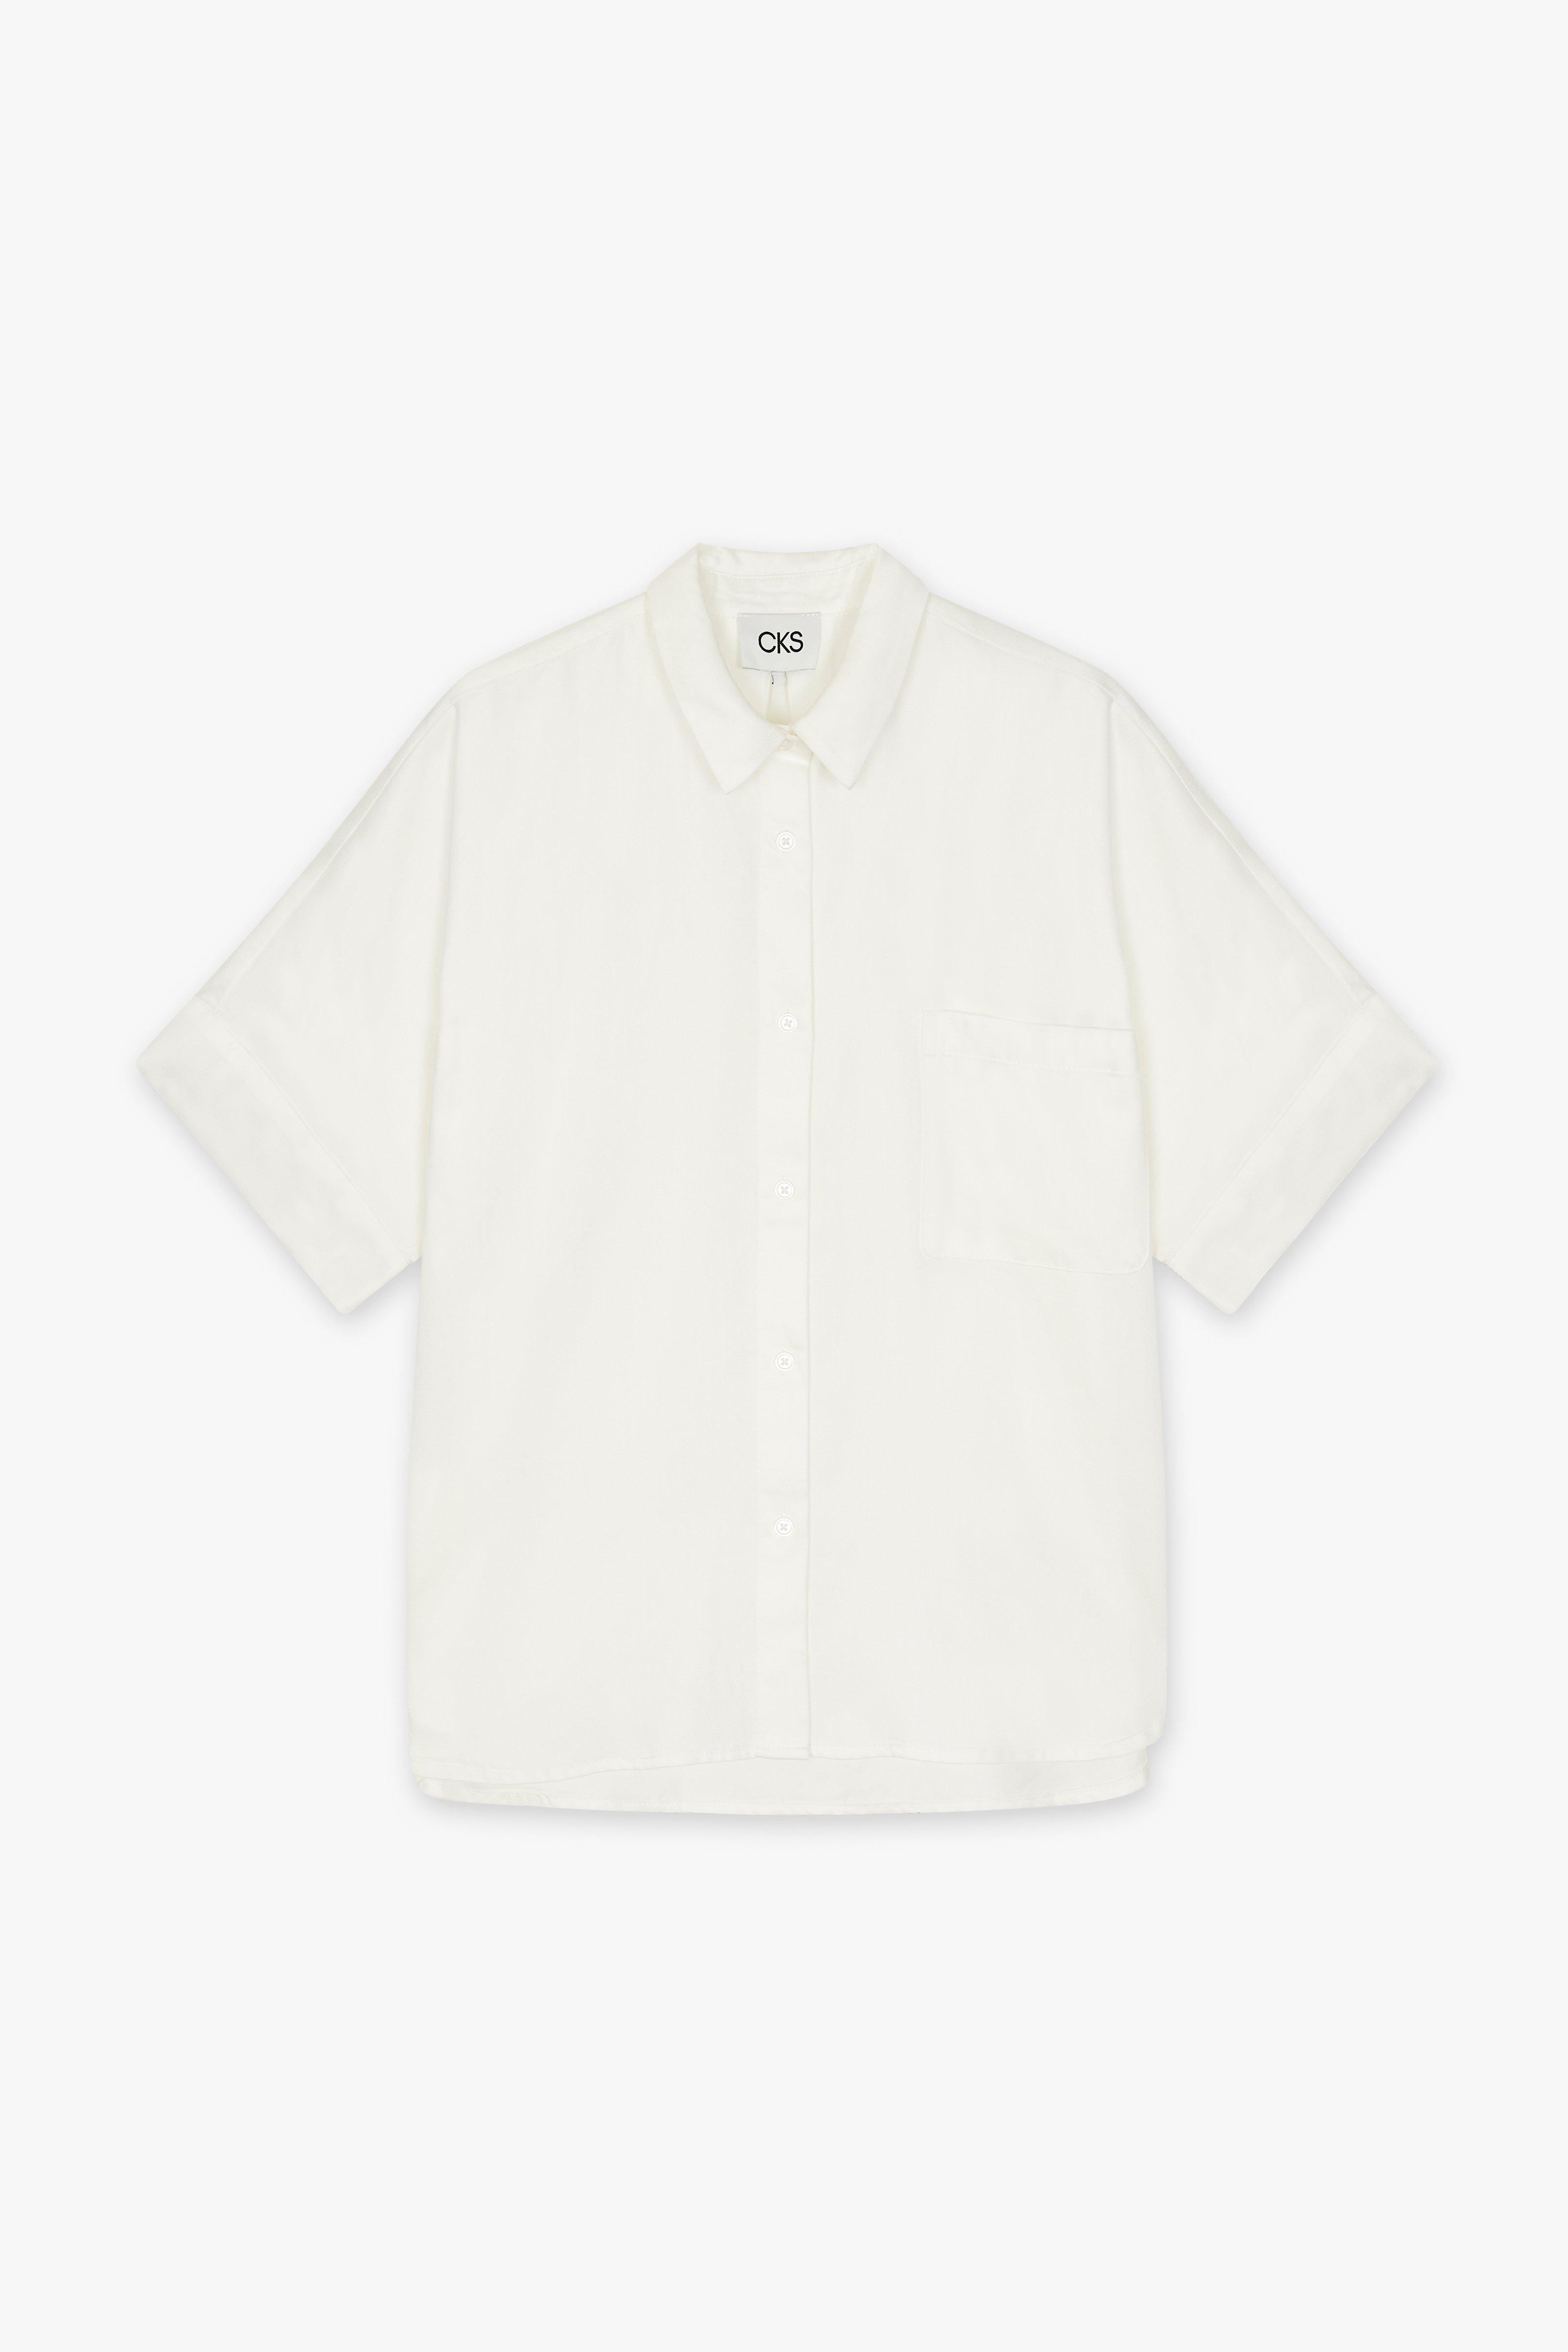 CKS Dames - SELAH - blouse long sleeves - white